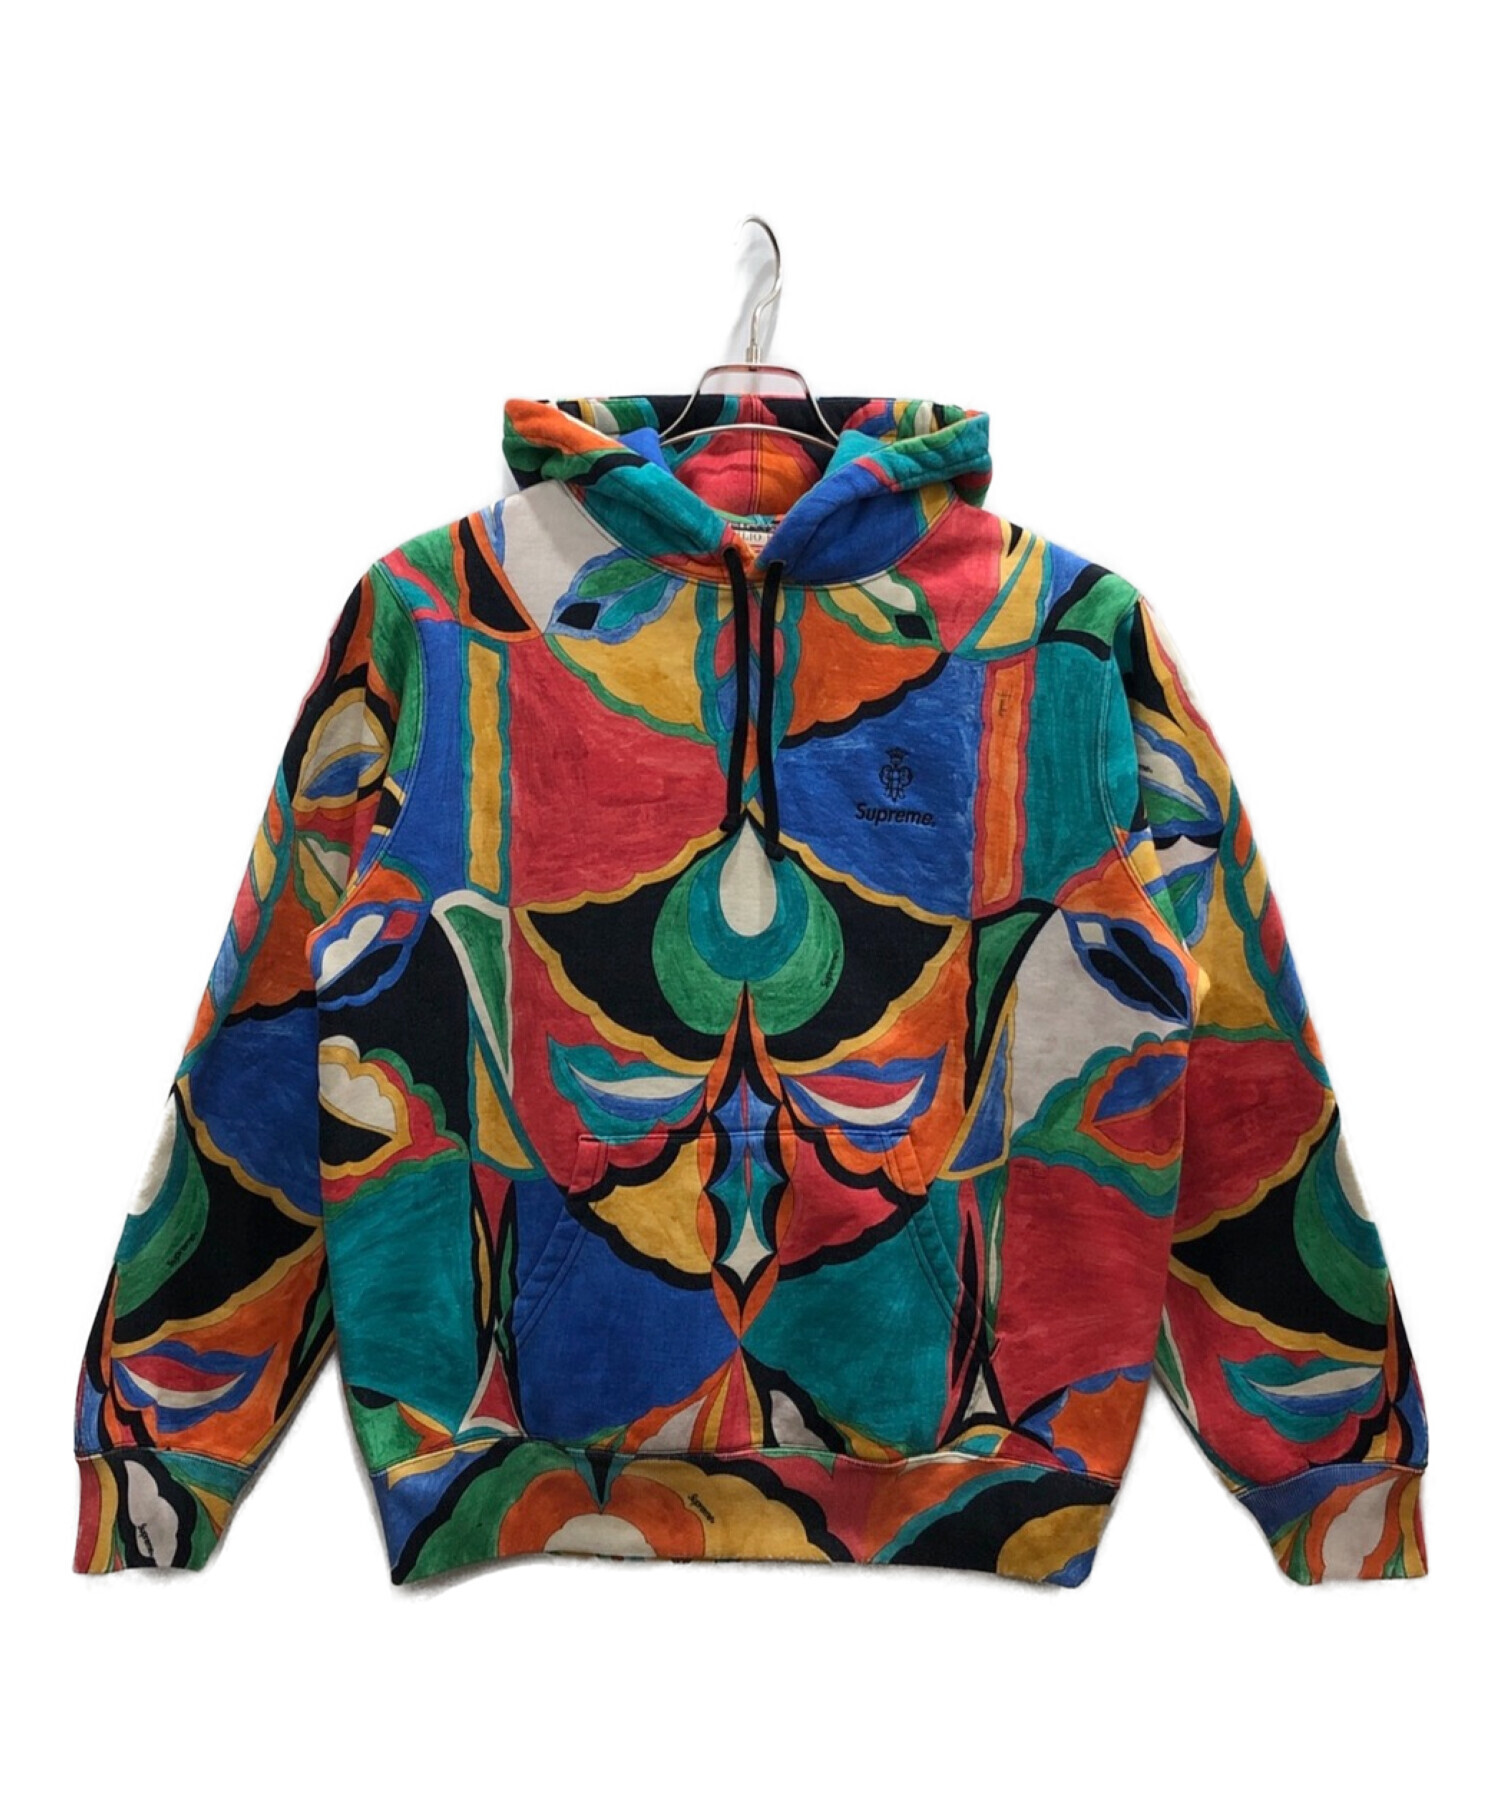 Supreme×Emilio Pucci (シュプリーム×エミリオプッチ) Pucci Hooded Sweatshirt マルチカラー サイズ:S